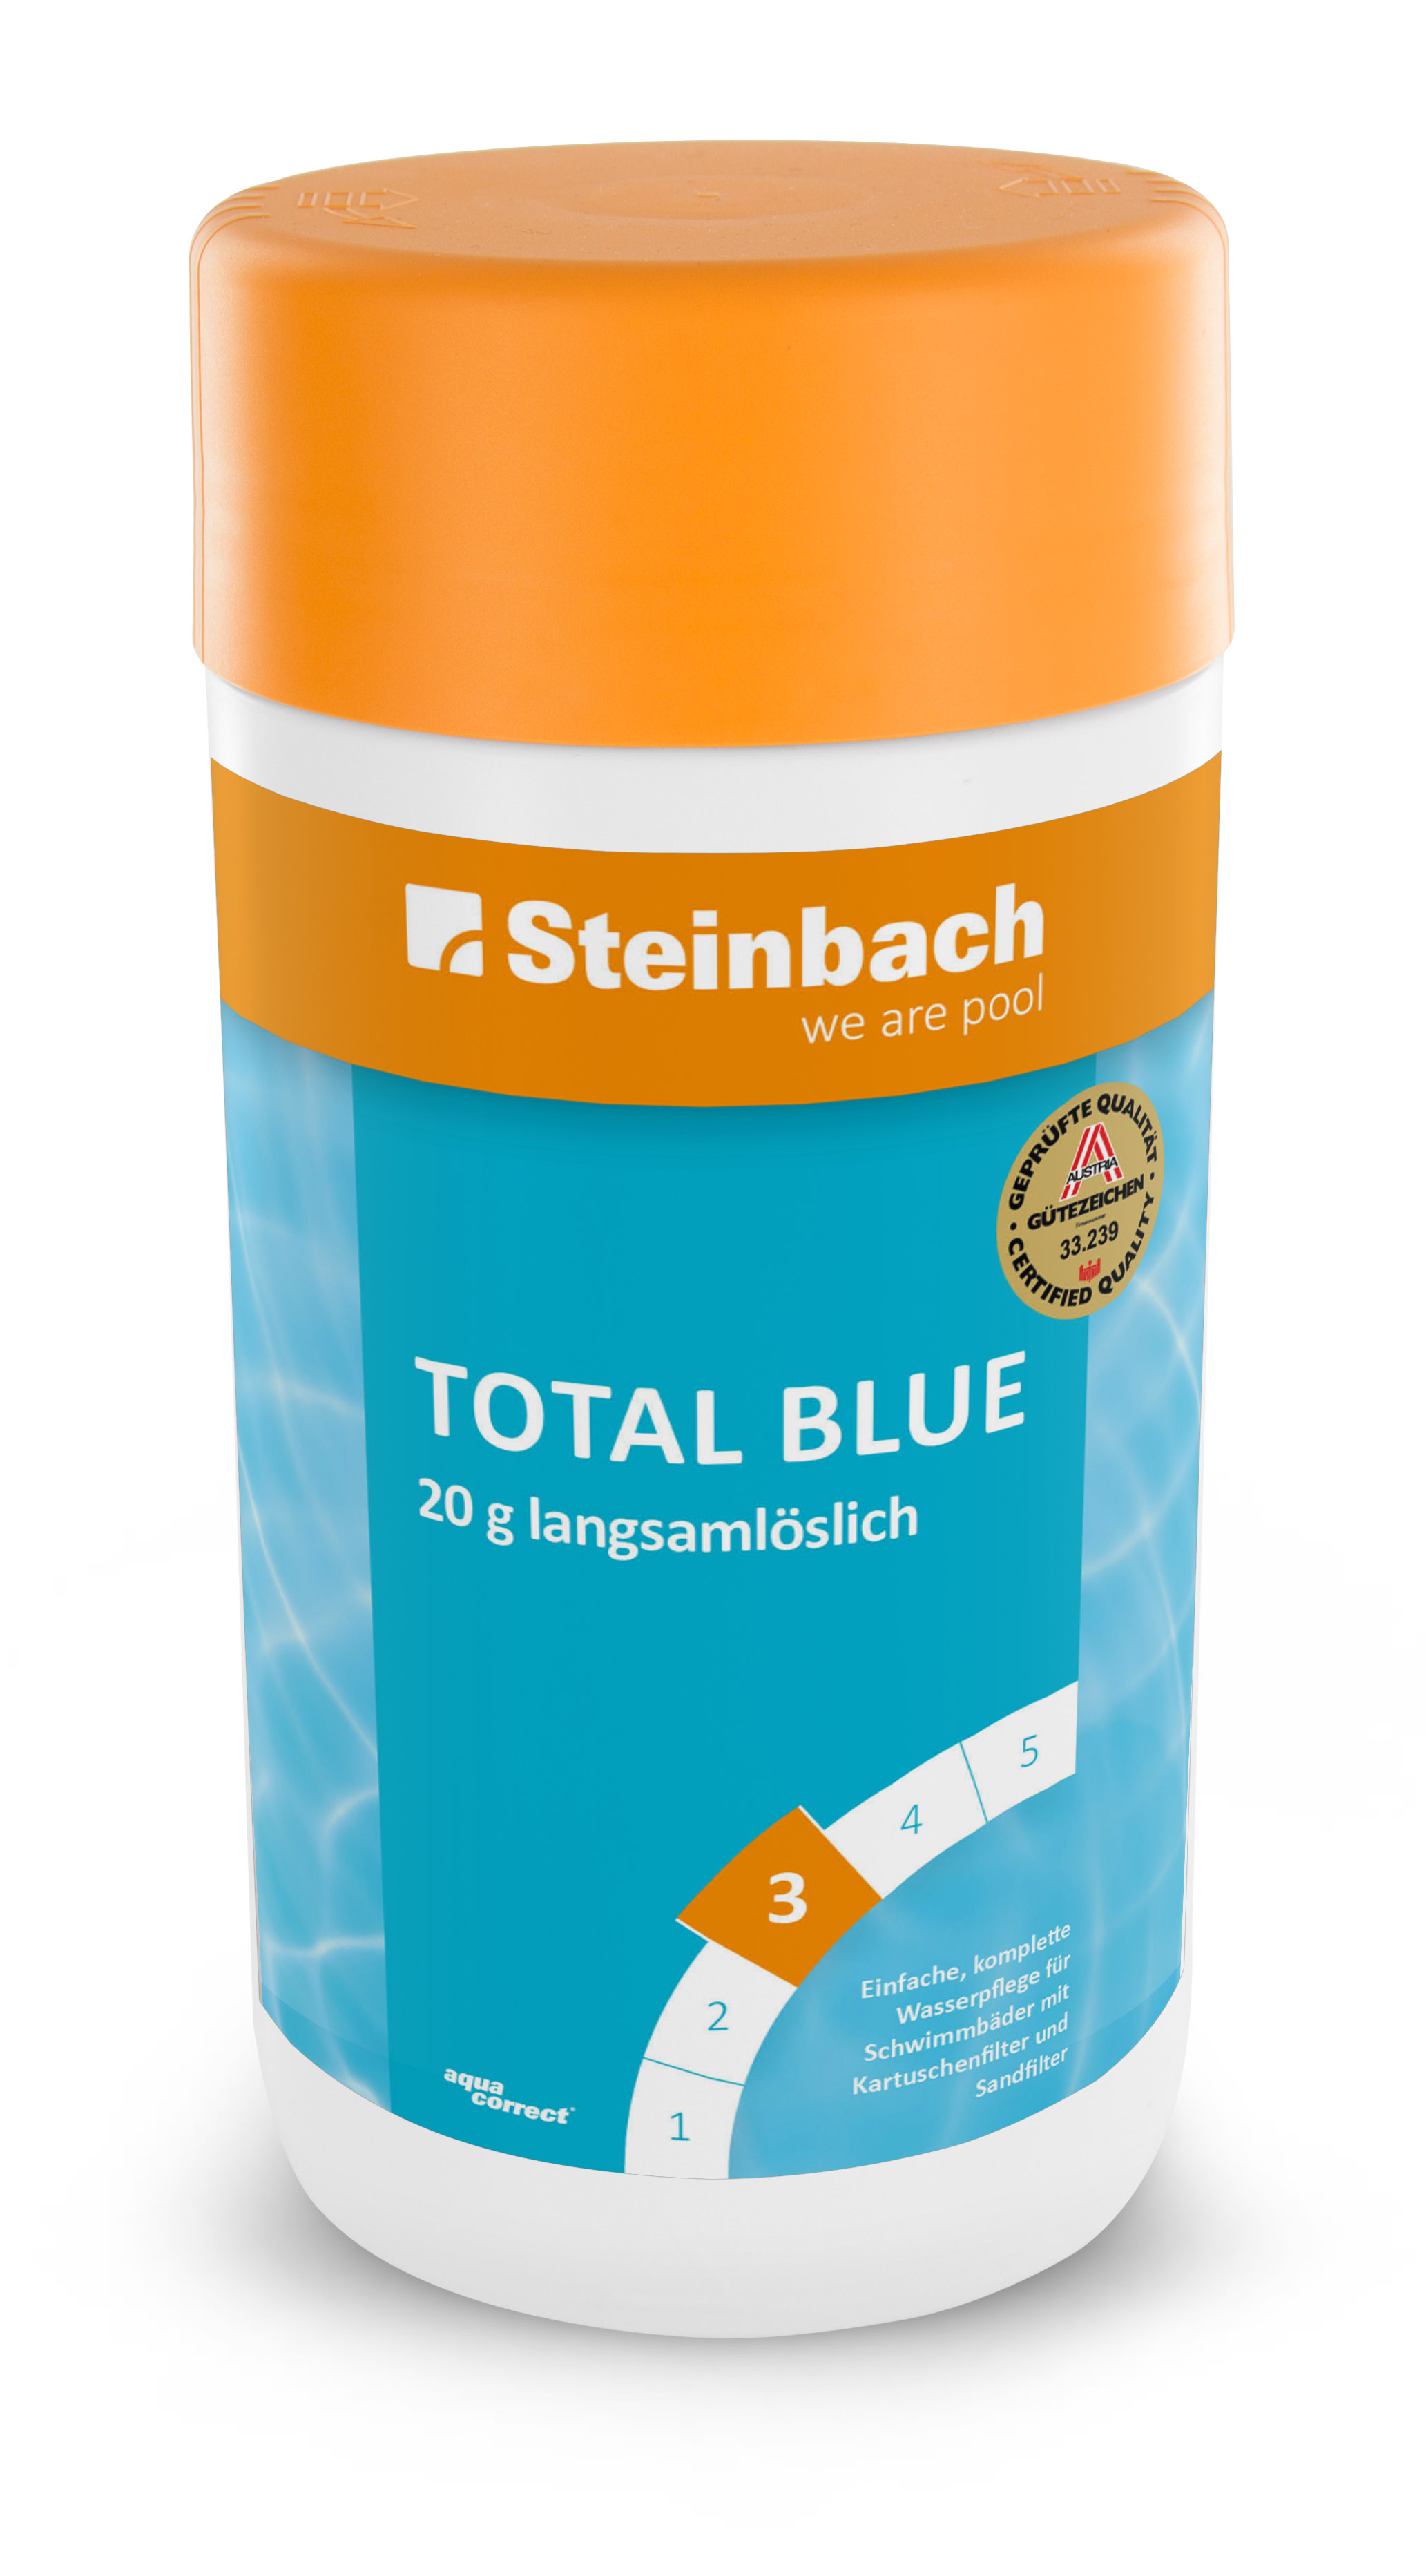 Steinbach Total Blue 20 g langsamlöslich, 1 kg